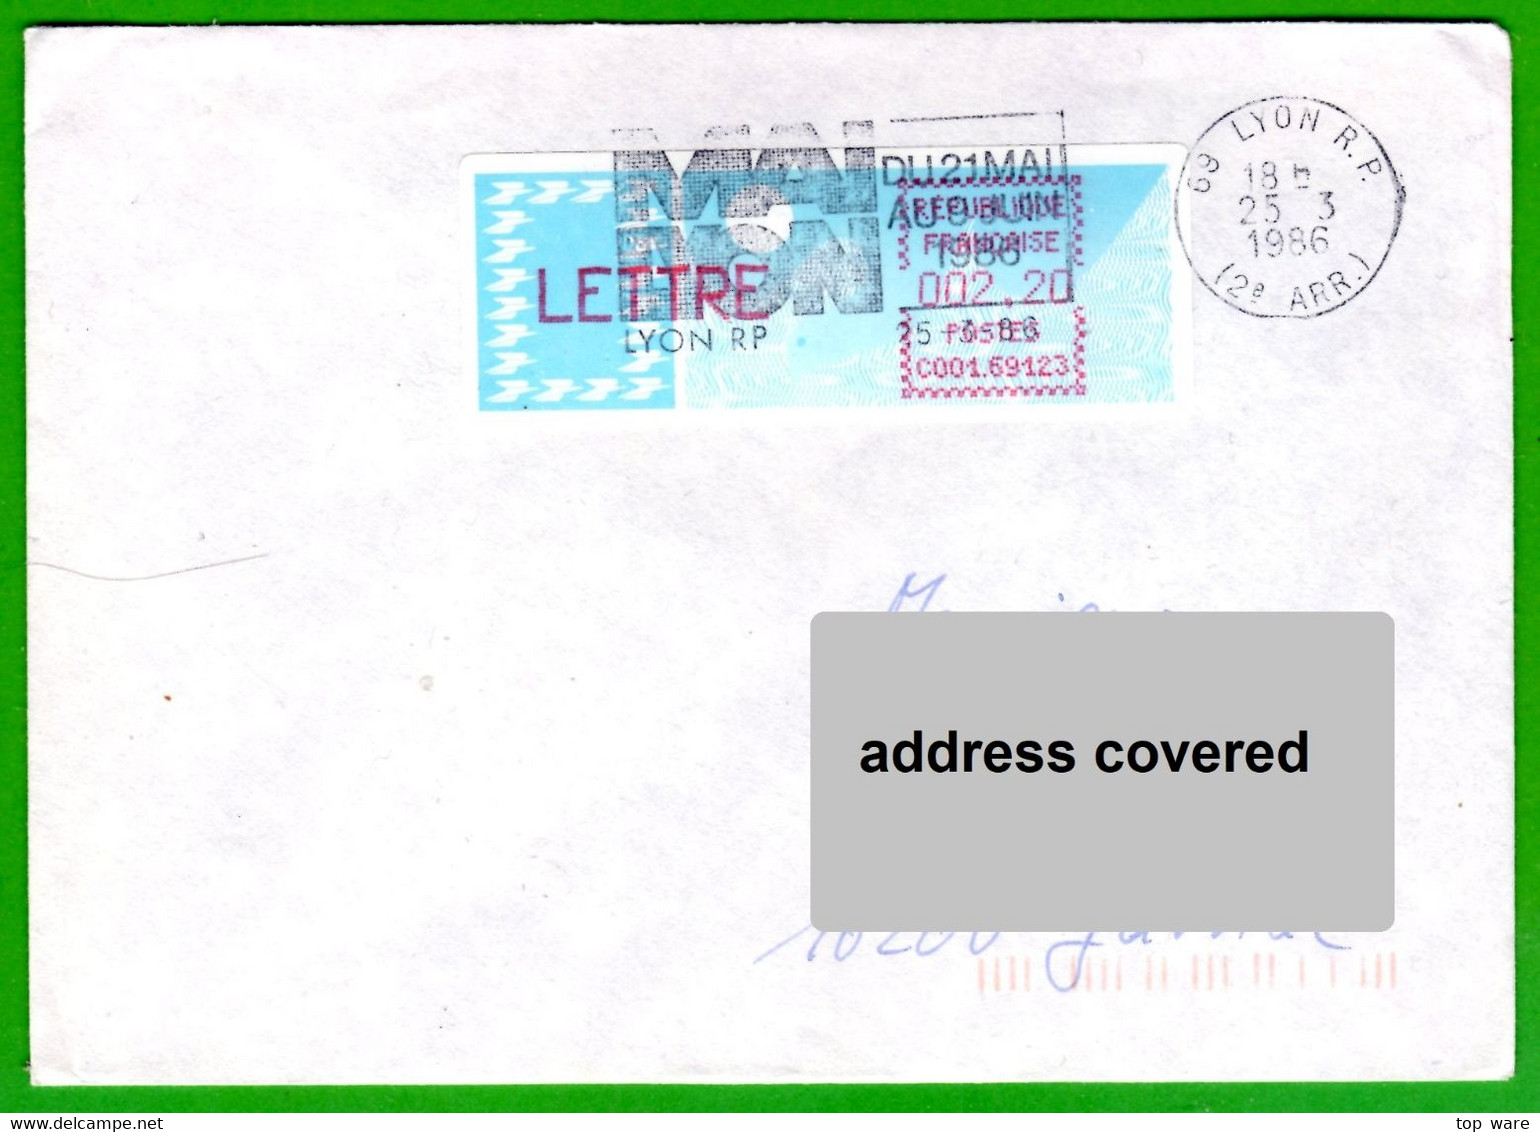 France LSA ATM Stamps C001.69123 / Michel 6.4 Zd / LETTRE 2,20 On Cover 25.3.86 Lyon RP / Distributeurs Automatenmarken - 1985 Papier « Carrier »